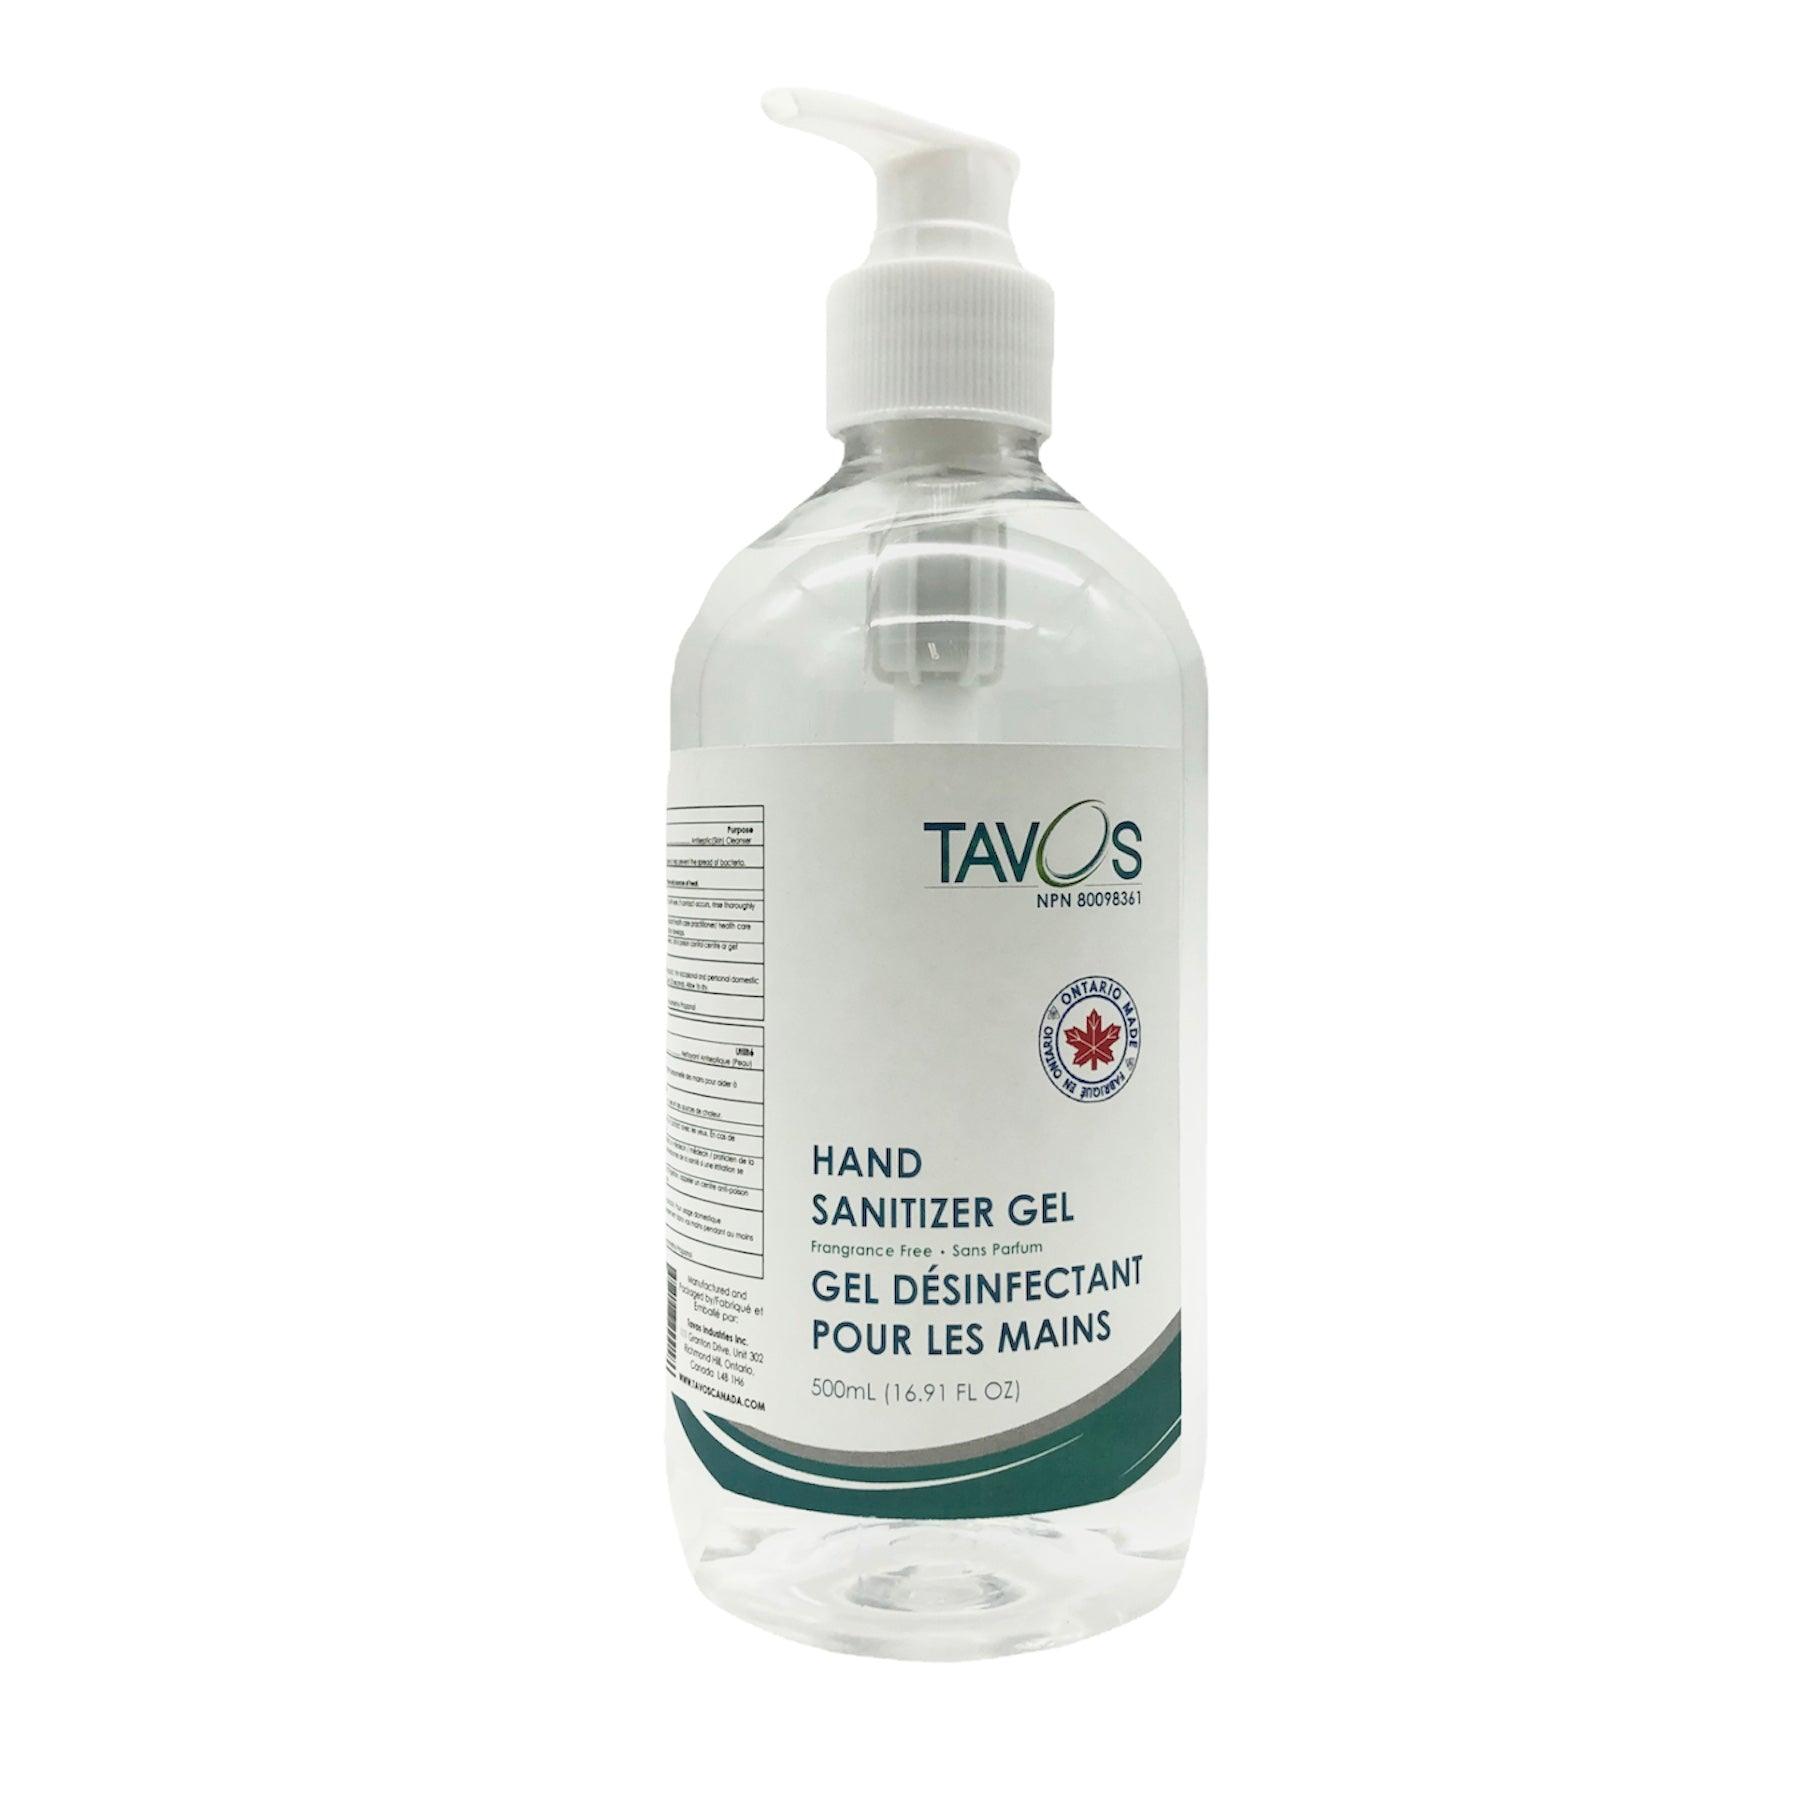 Hand Sanitizer Gel by Tavos